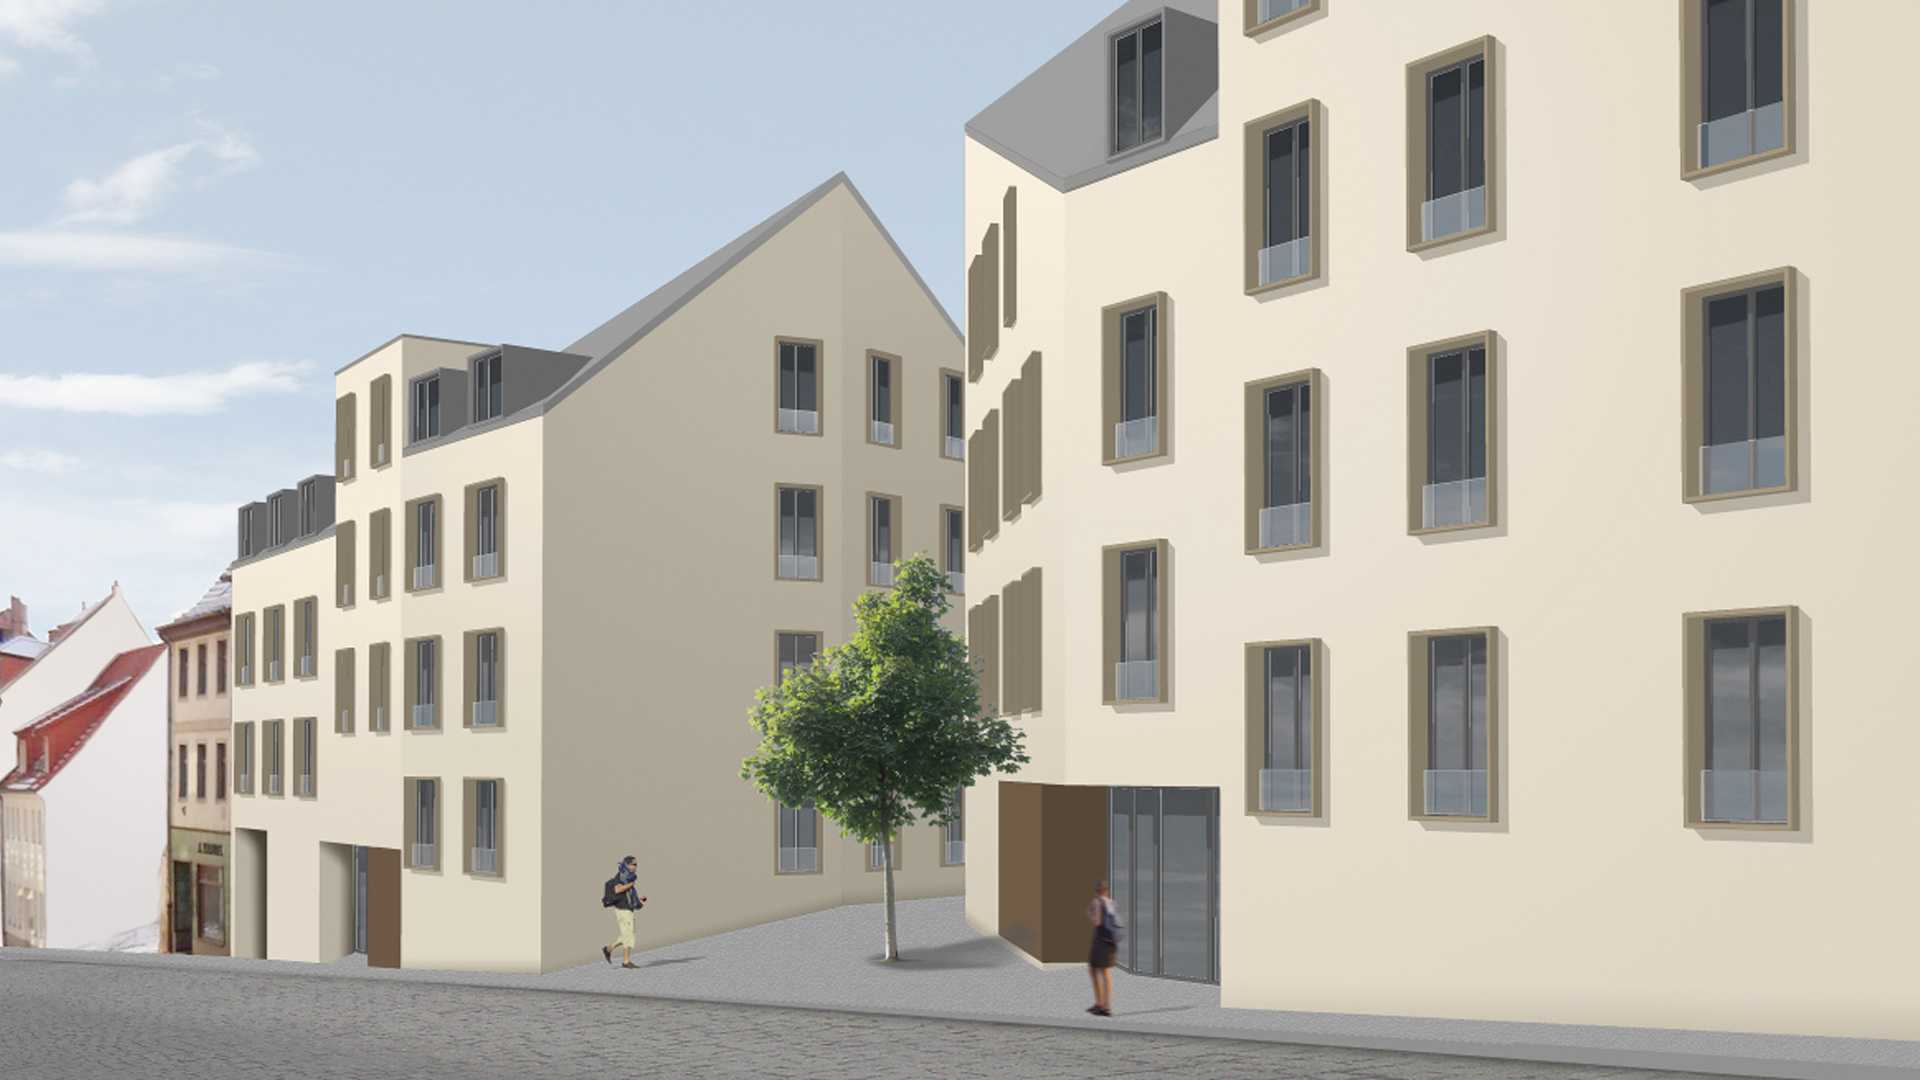 Wohngebäude in Altenburg Teichstraße, Außenansicht 3D-Modell